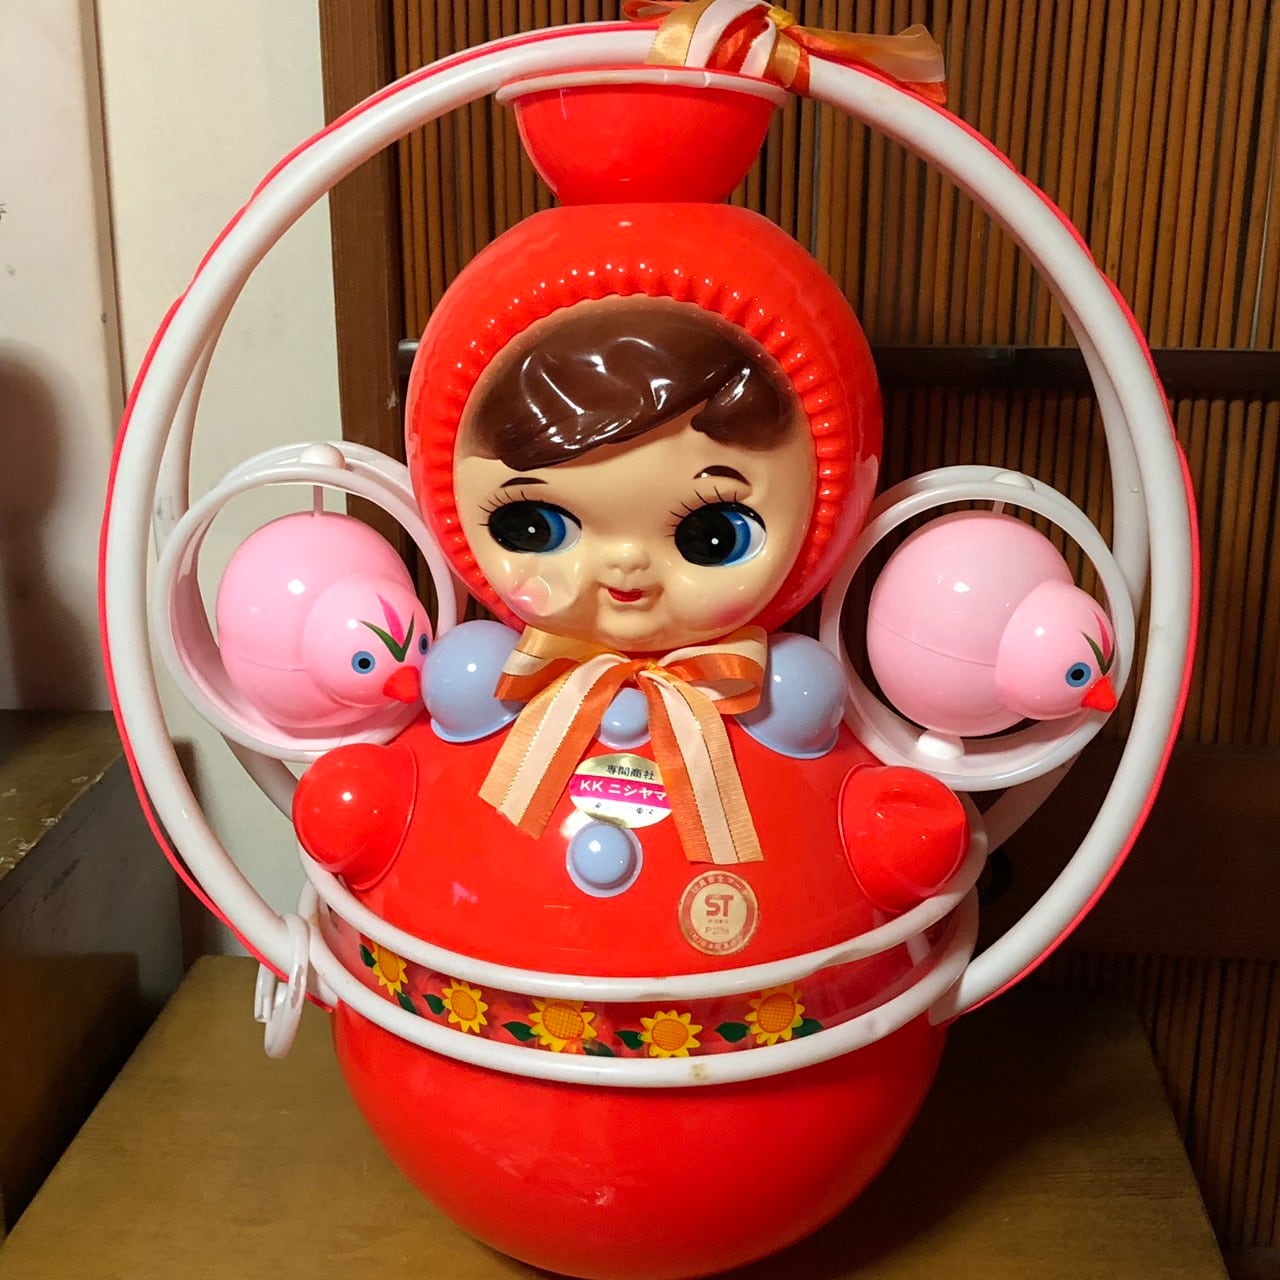 セルロイド人形 Celluloid doll | TOKIOretro レトロ可愛い商品の 